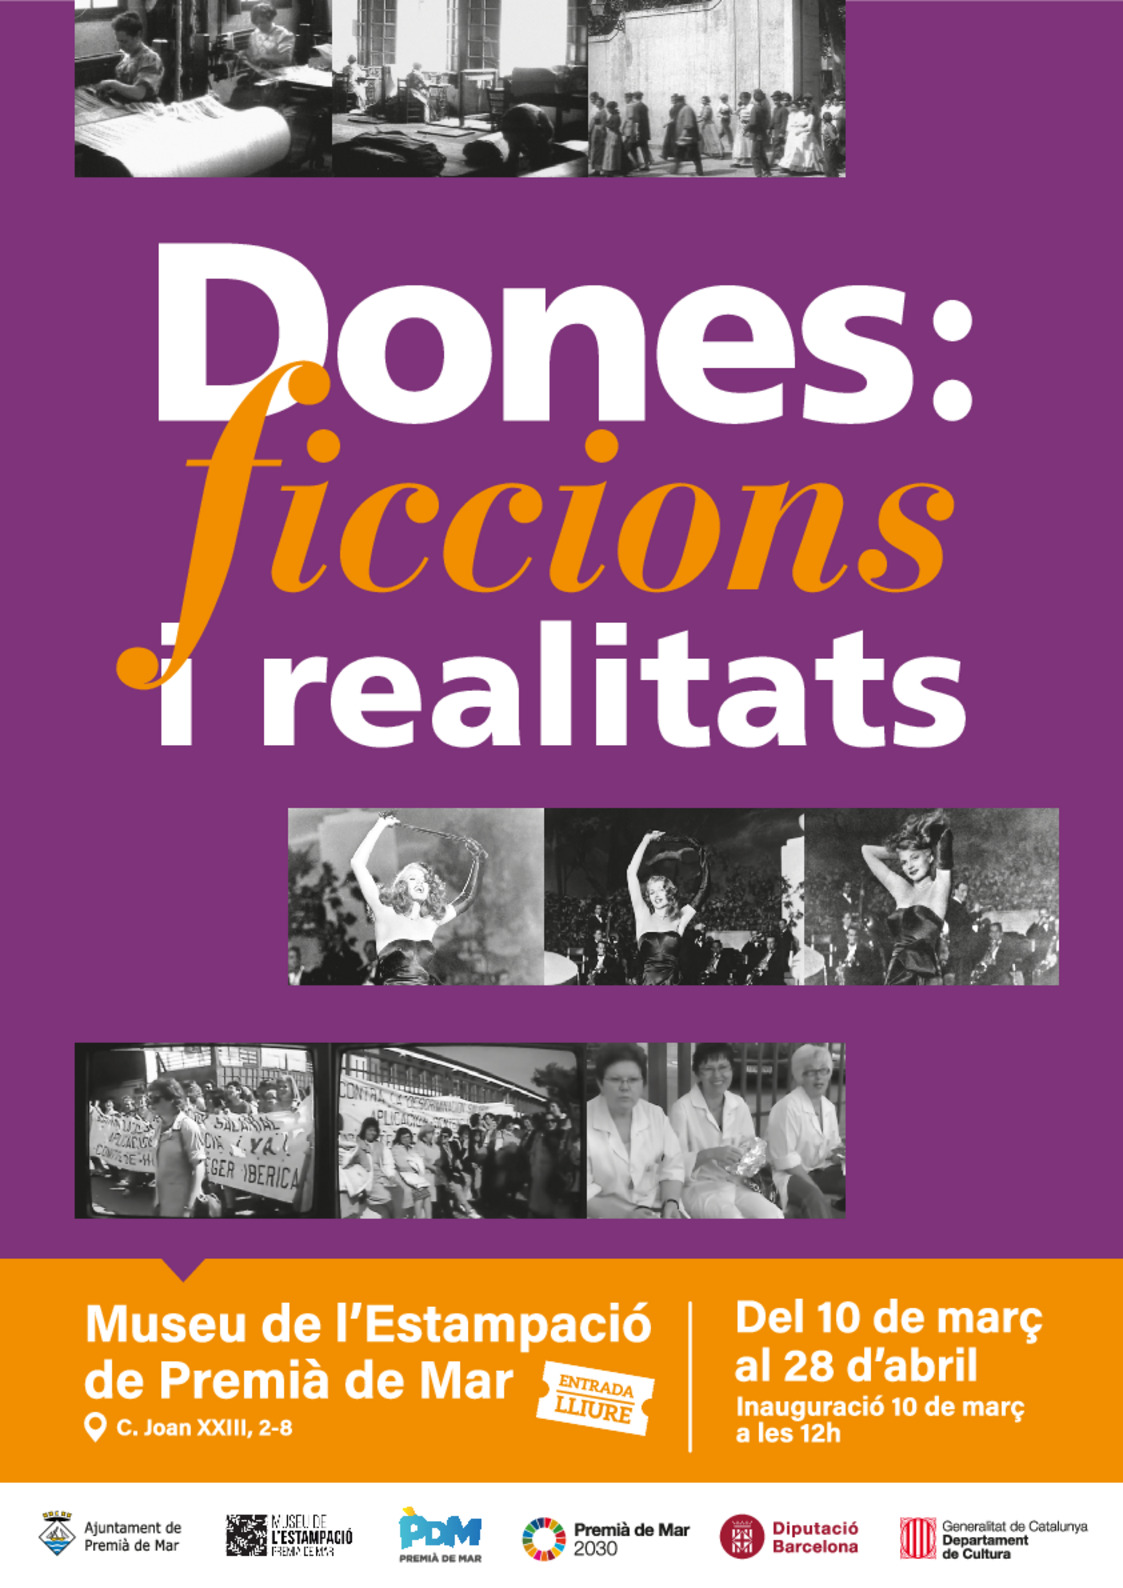 Inauguraci de l'exposici "Dones: ficcions i realitats"